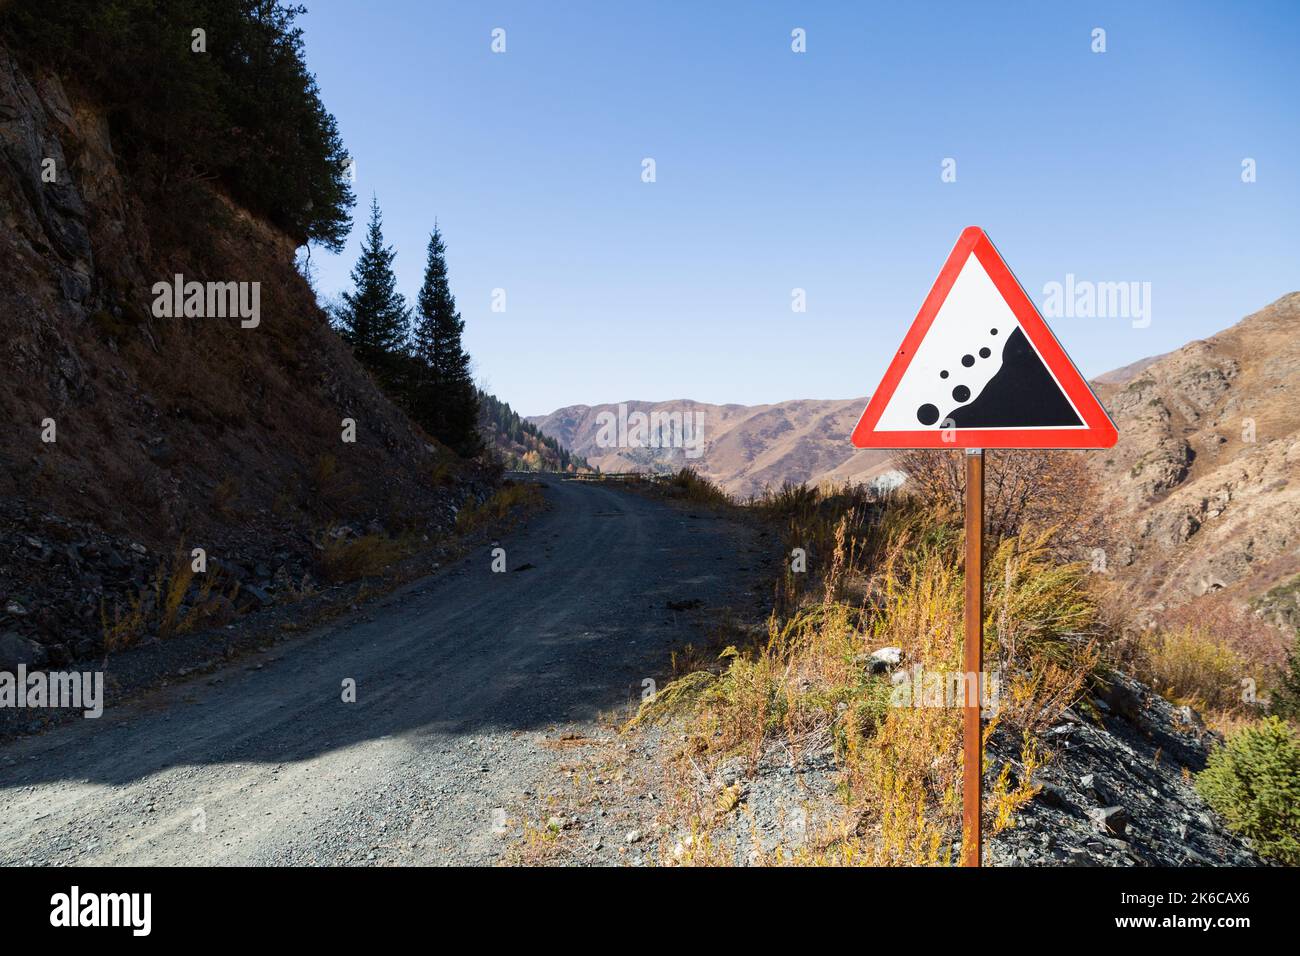 Señal de carretera en una montaña peligrosa Foto de stock